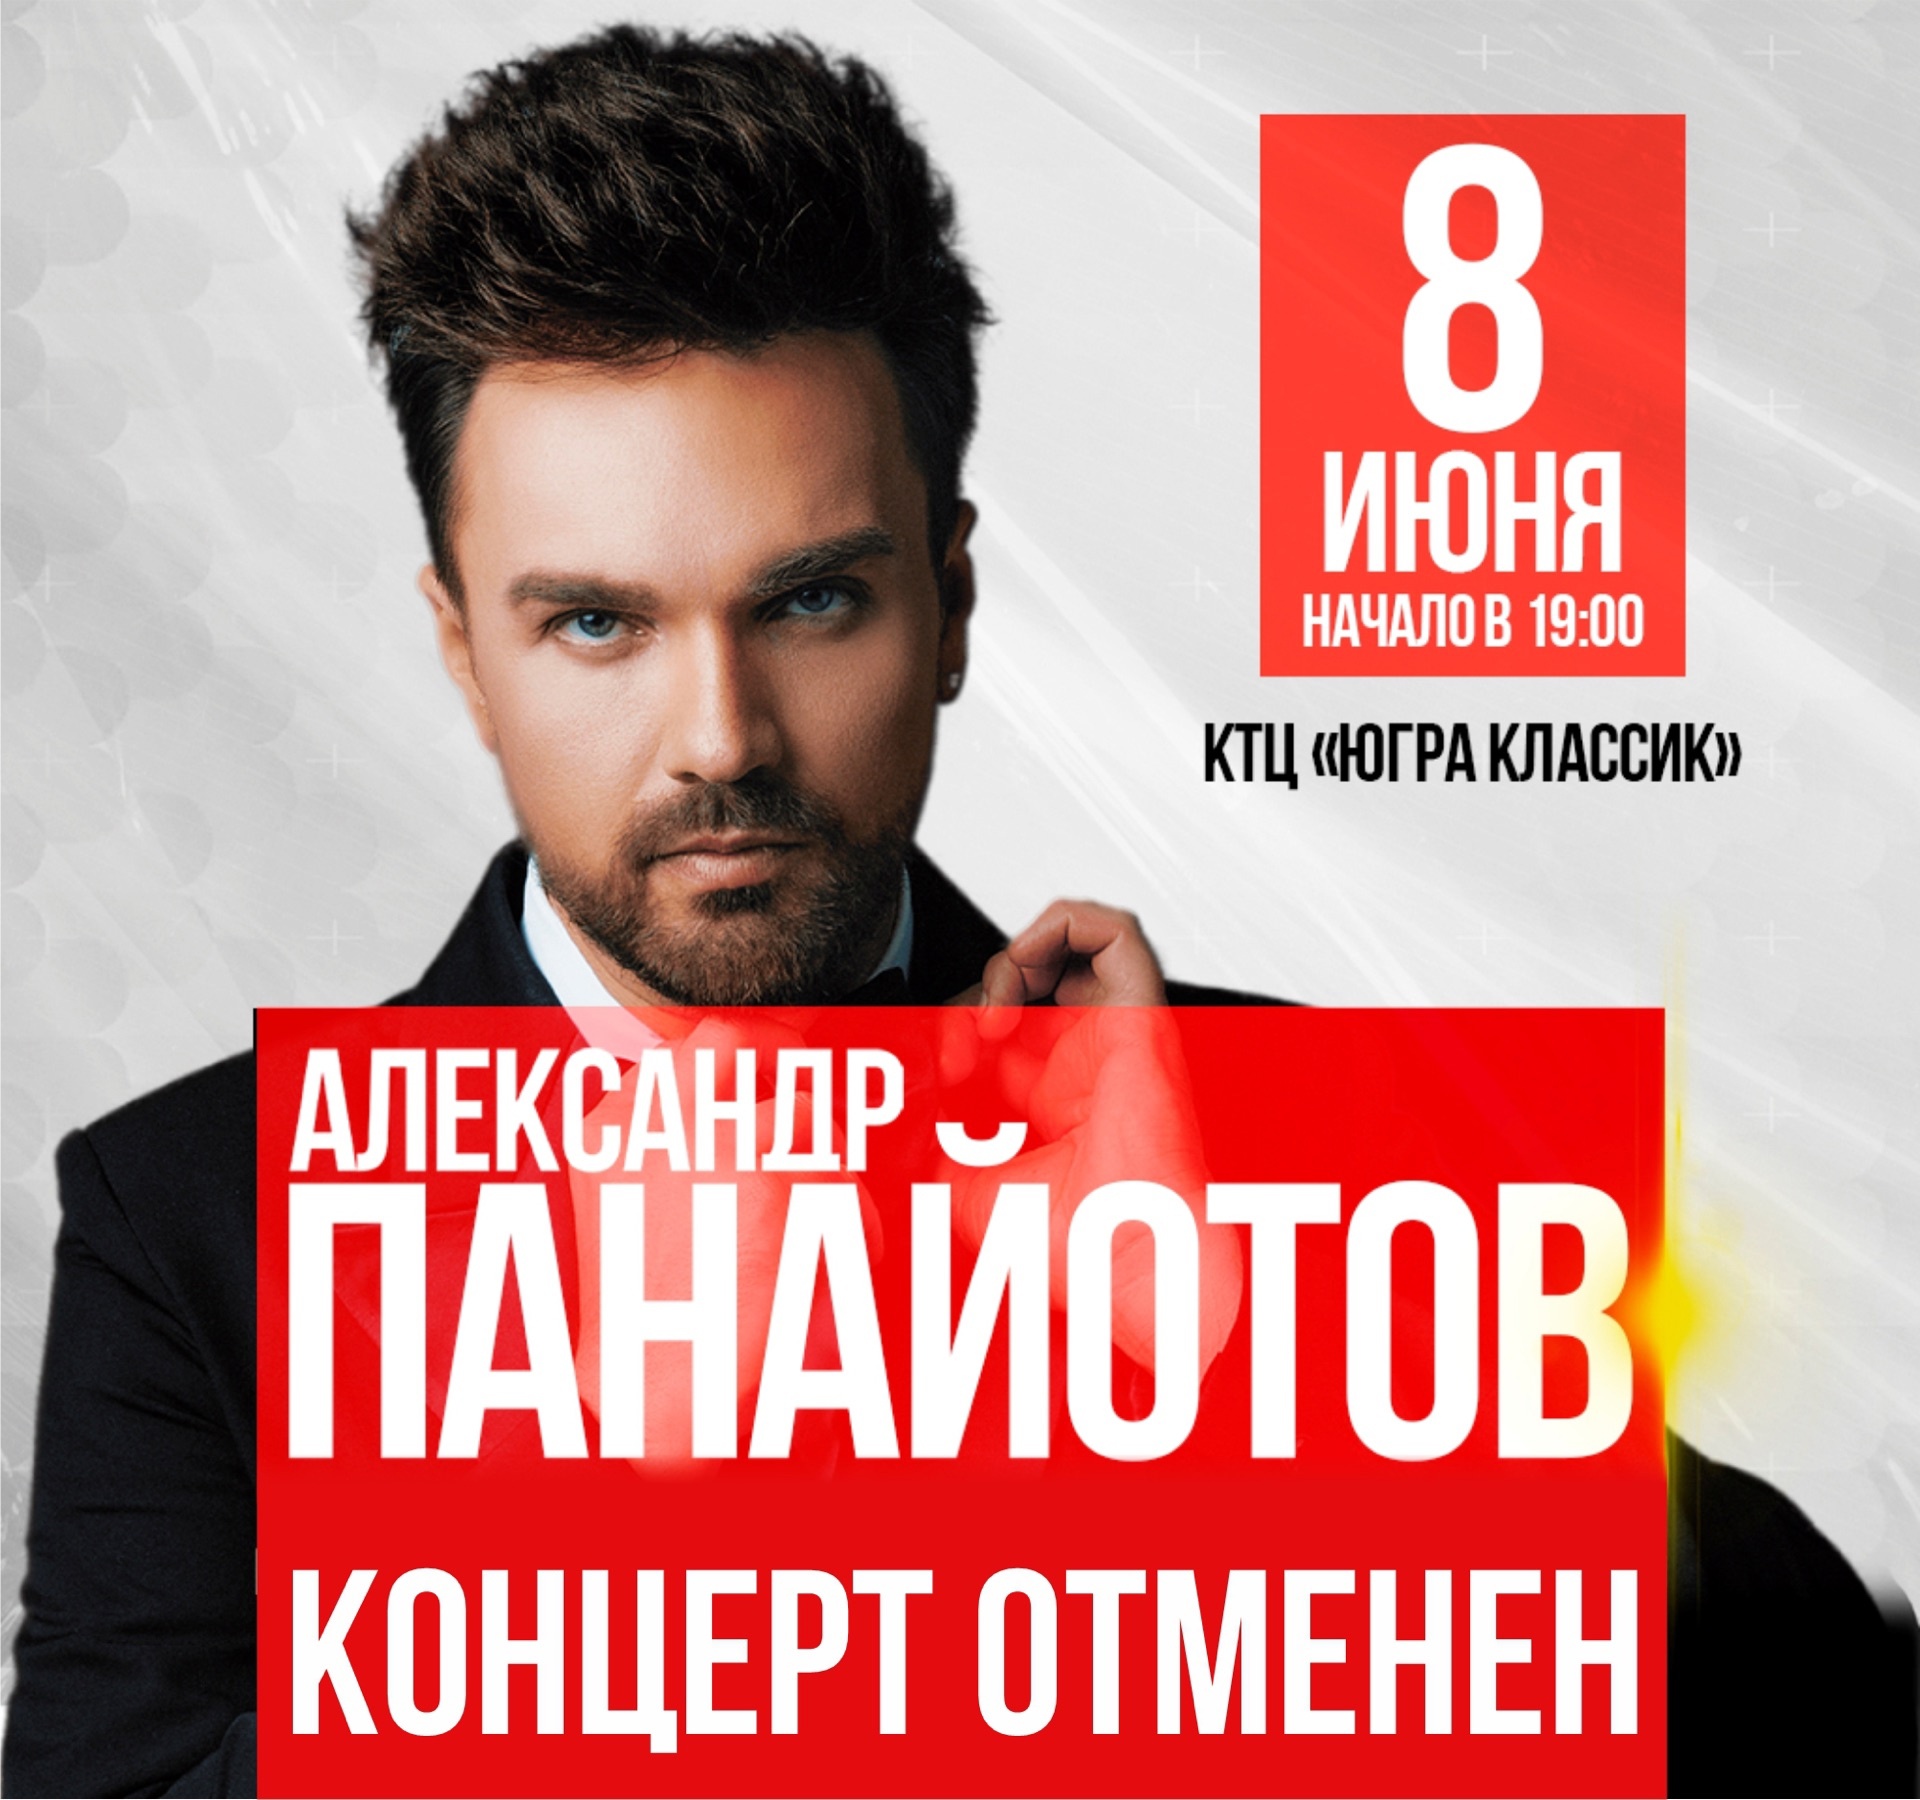  Концерт Александра Панайотова, запланированный на 8 июня - отменяется